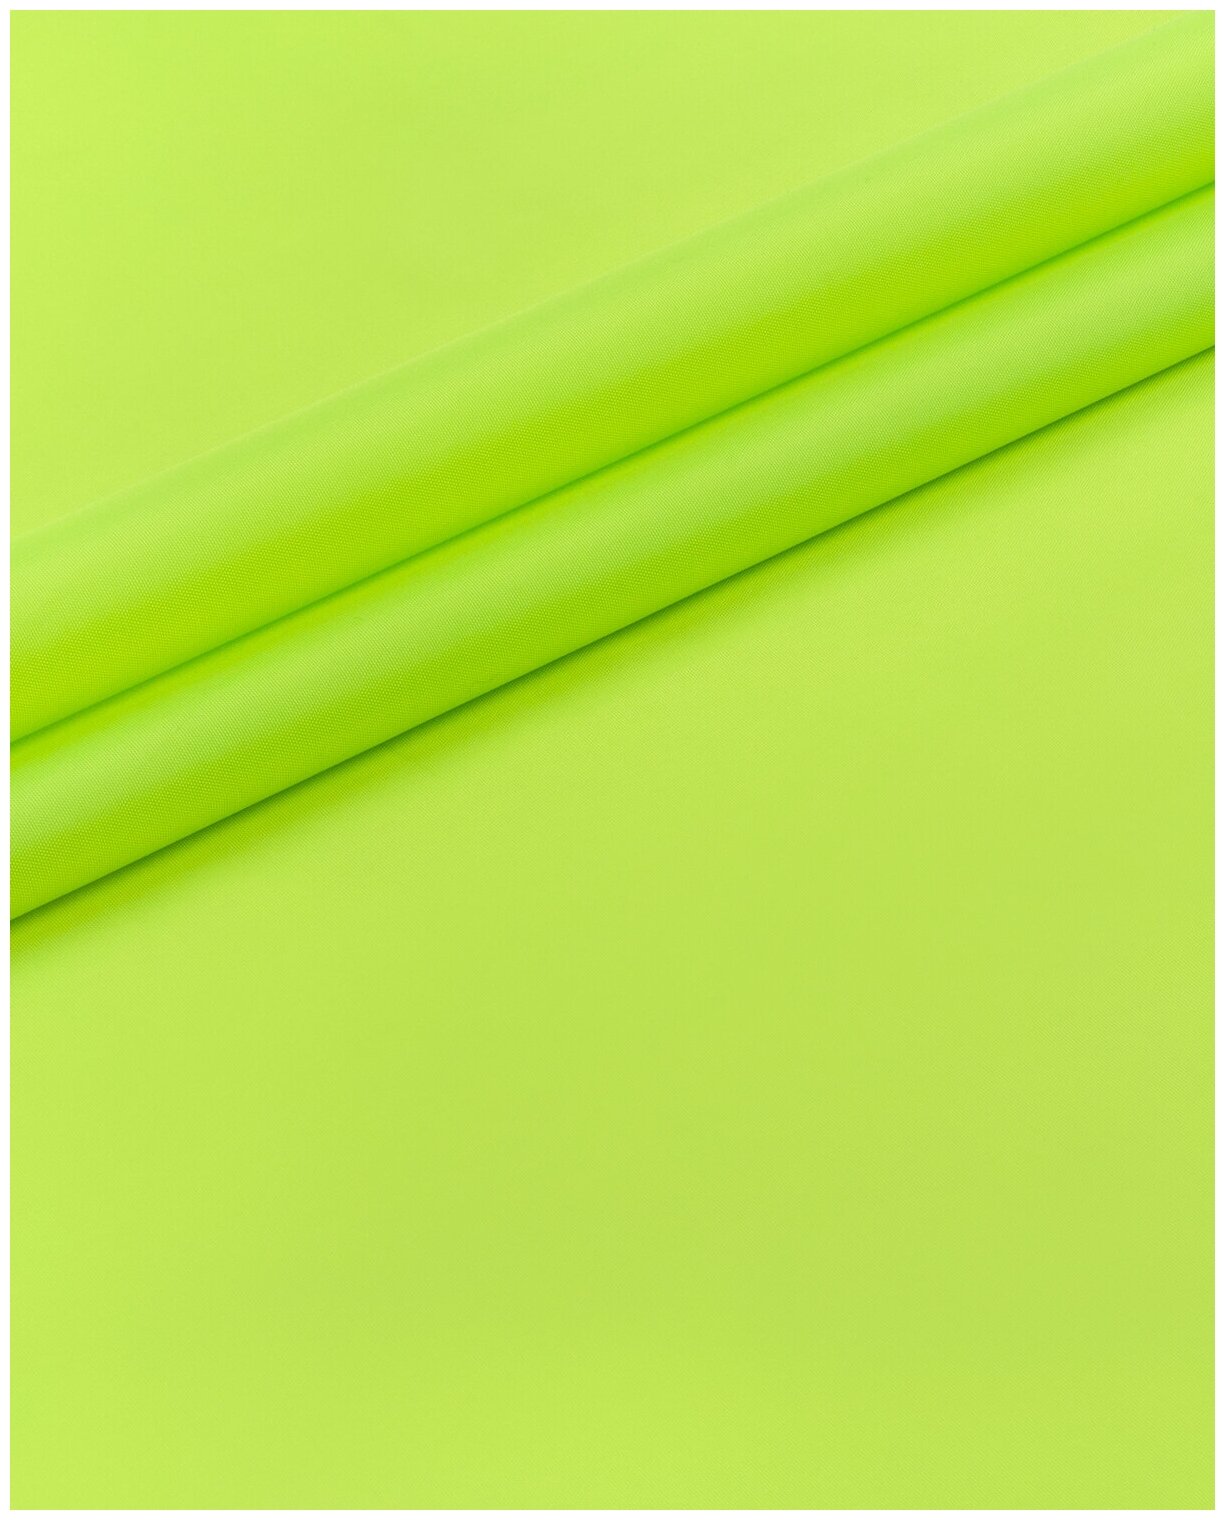 Ткань для спецодежды Оксфорд 210Д 10 м * 150 см, зеленый 001